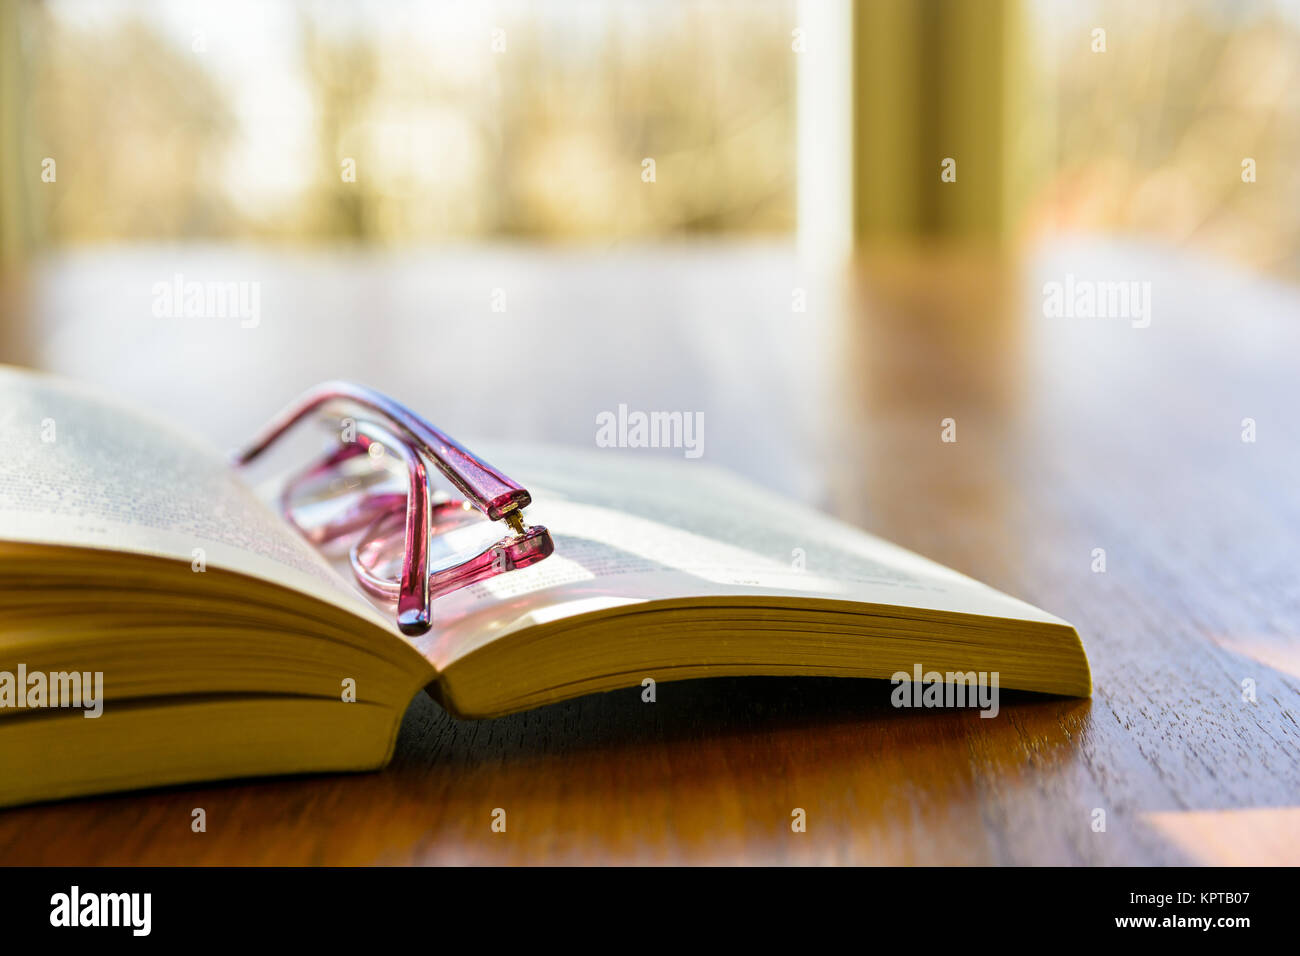 Nahaufnahme einer offenen Tasche Buch mit einer Lesebrille, flach auf einem  Tisch vor dem Fenster Stockfotografie - Alamy